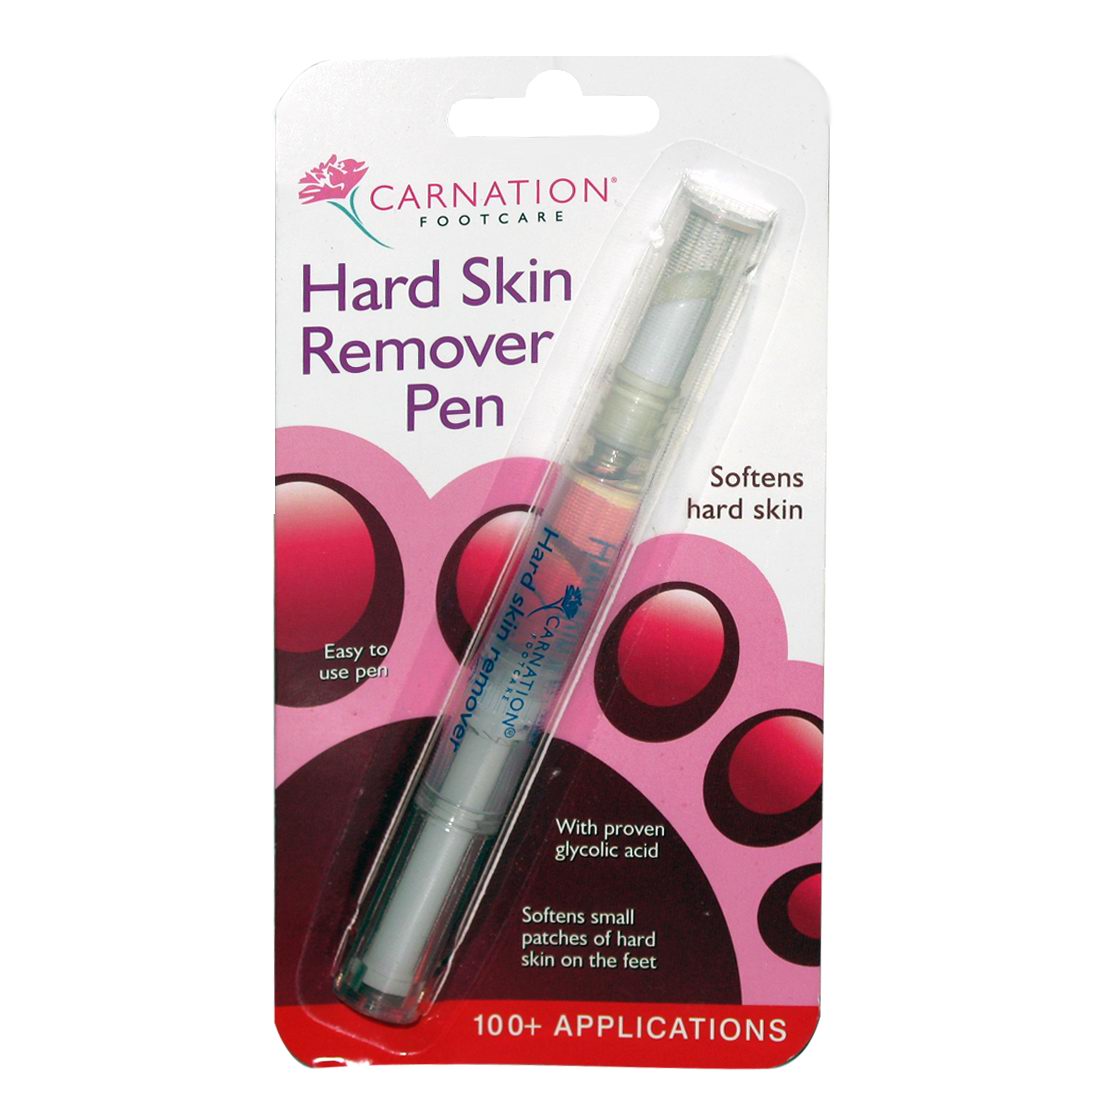 Carnation Hard Skin Remover Pen - - 1 pen